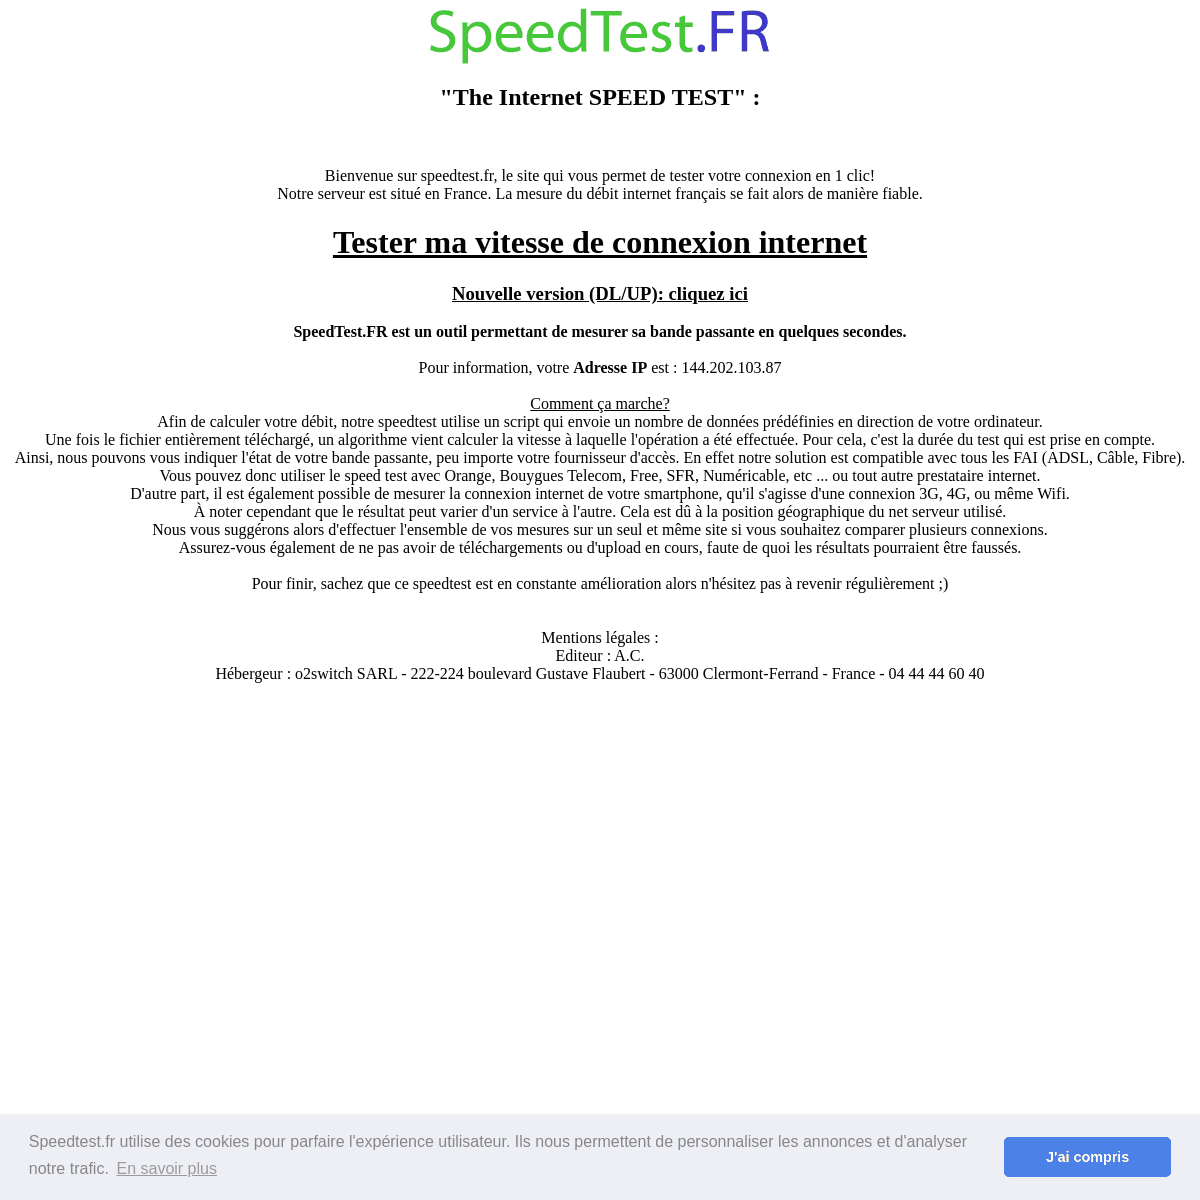 A complete backup of speedtest.fr